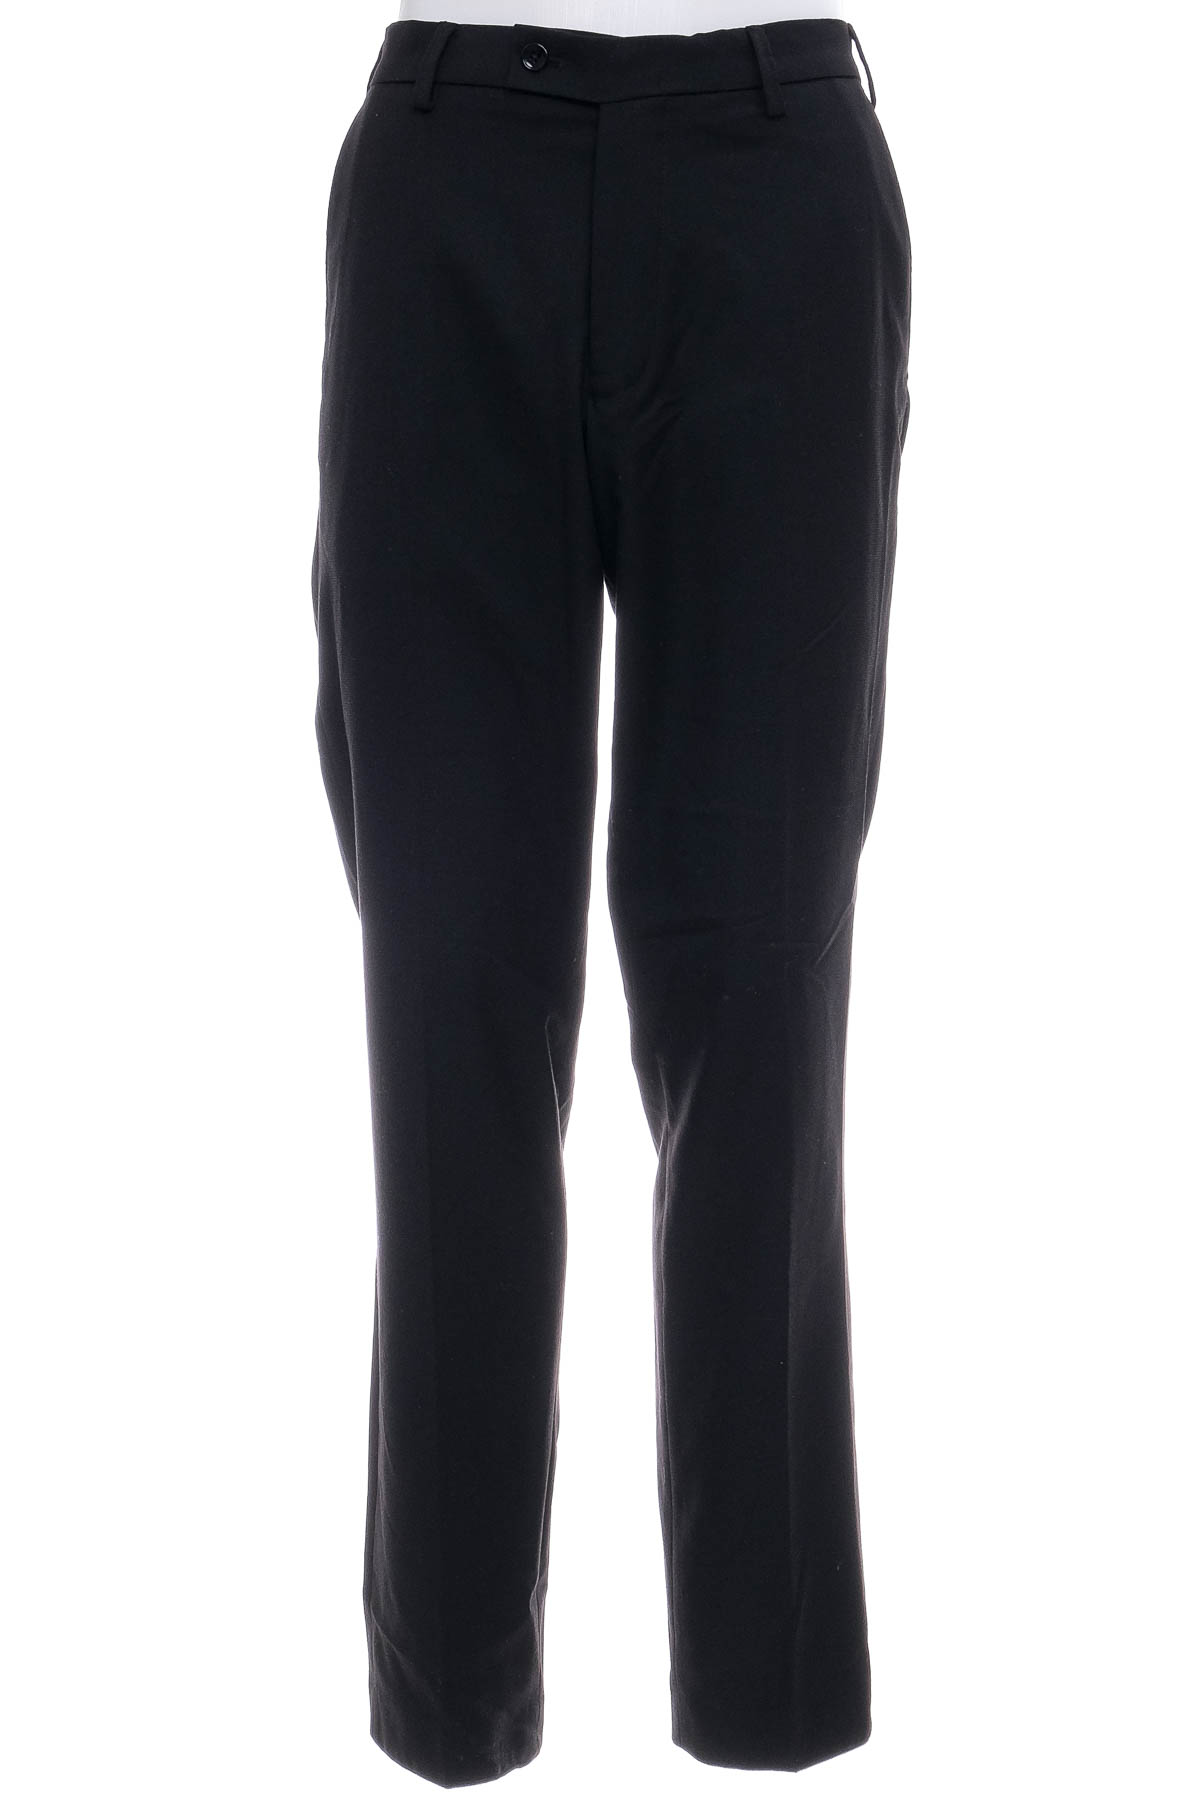 Men's trousers - Bpc selection bonprix collection - 0